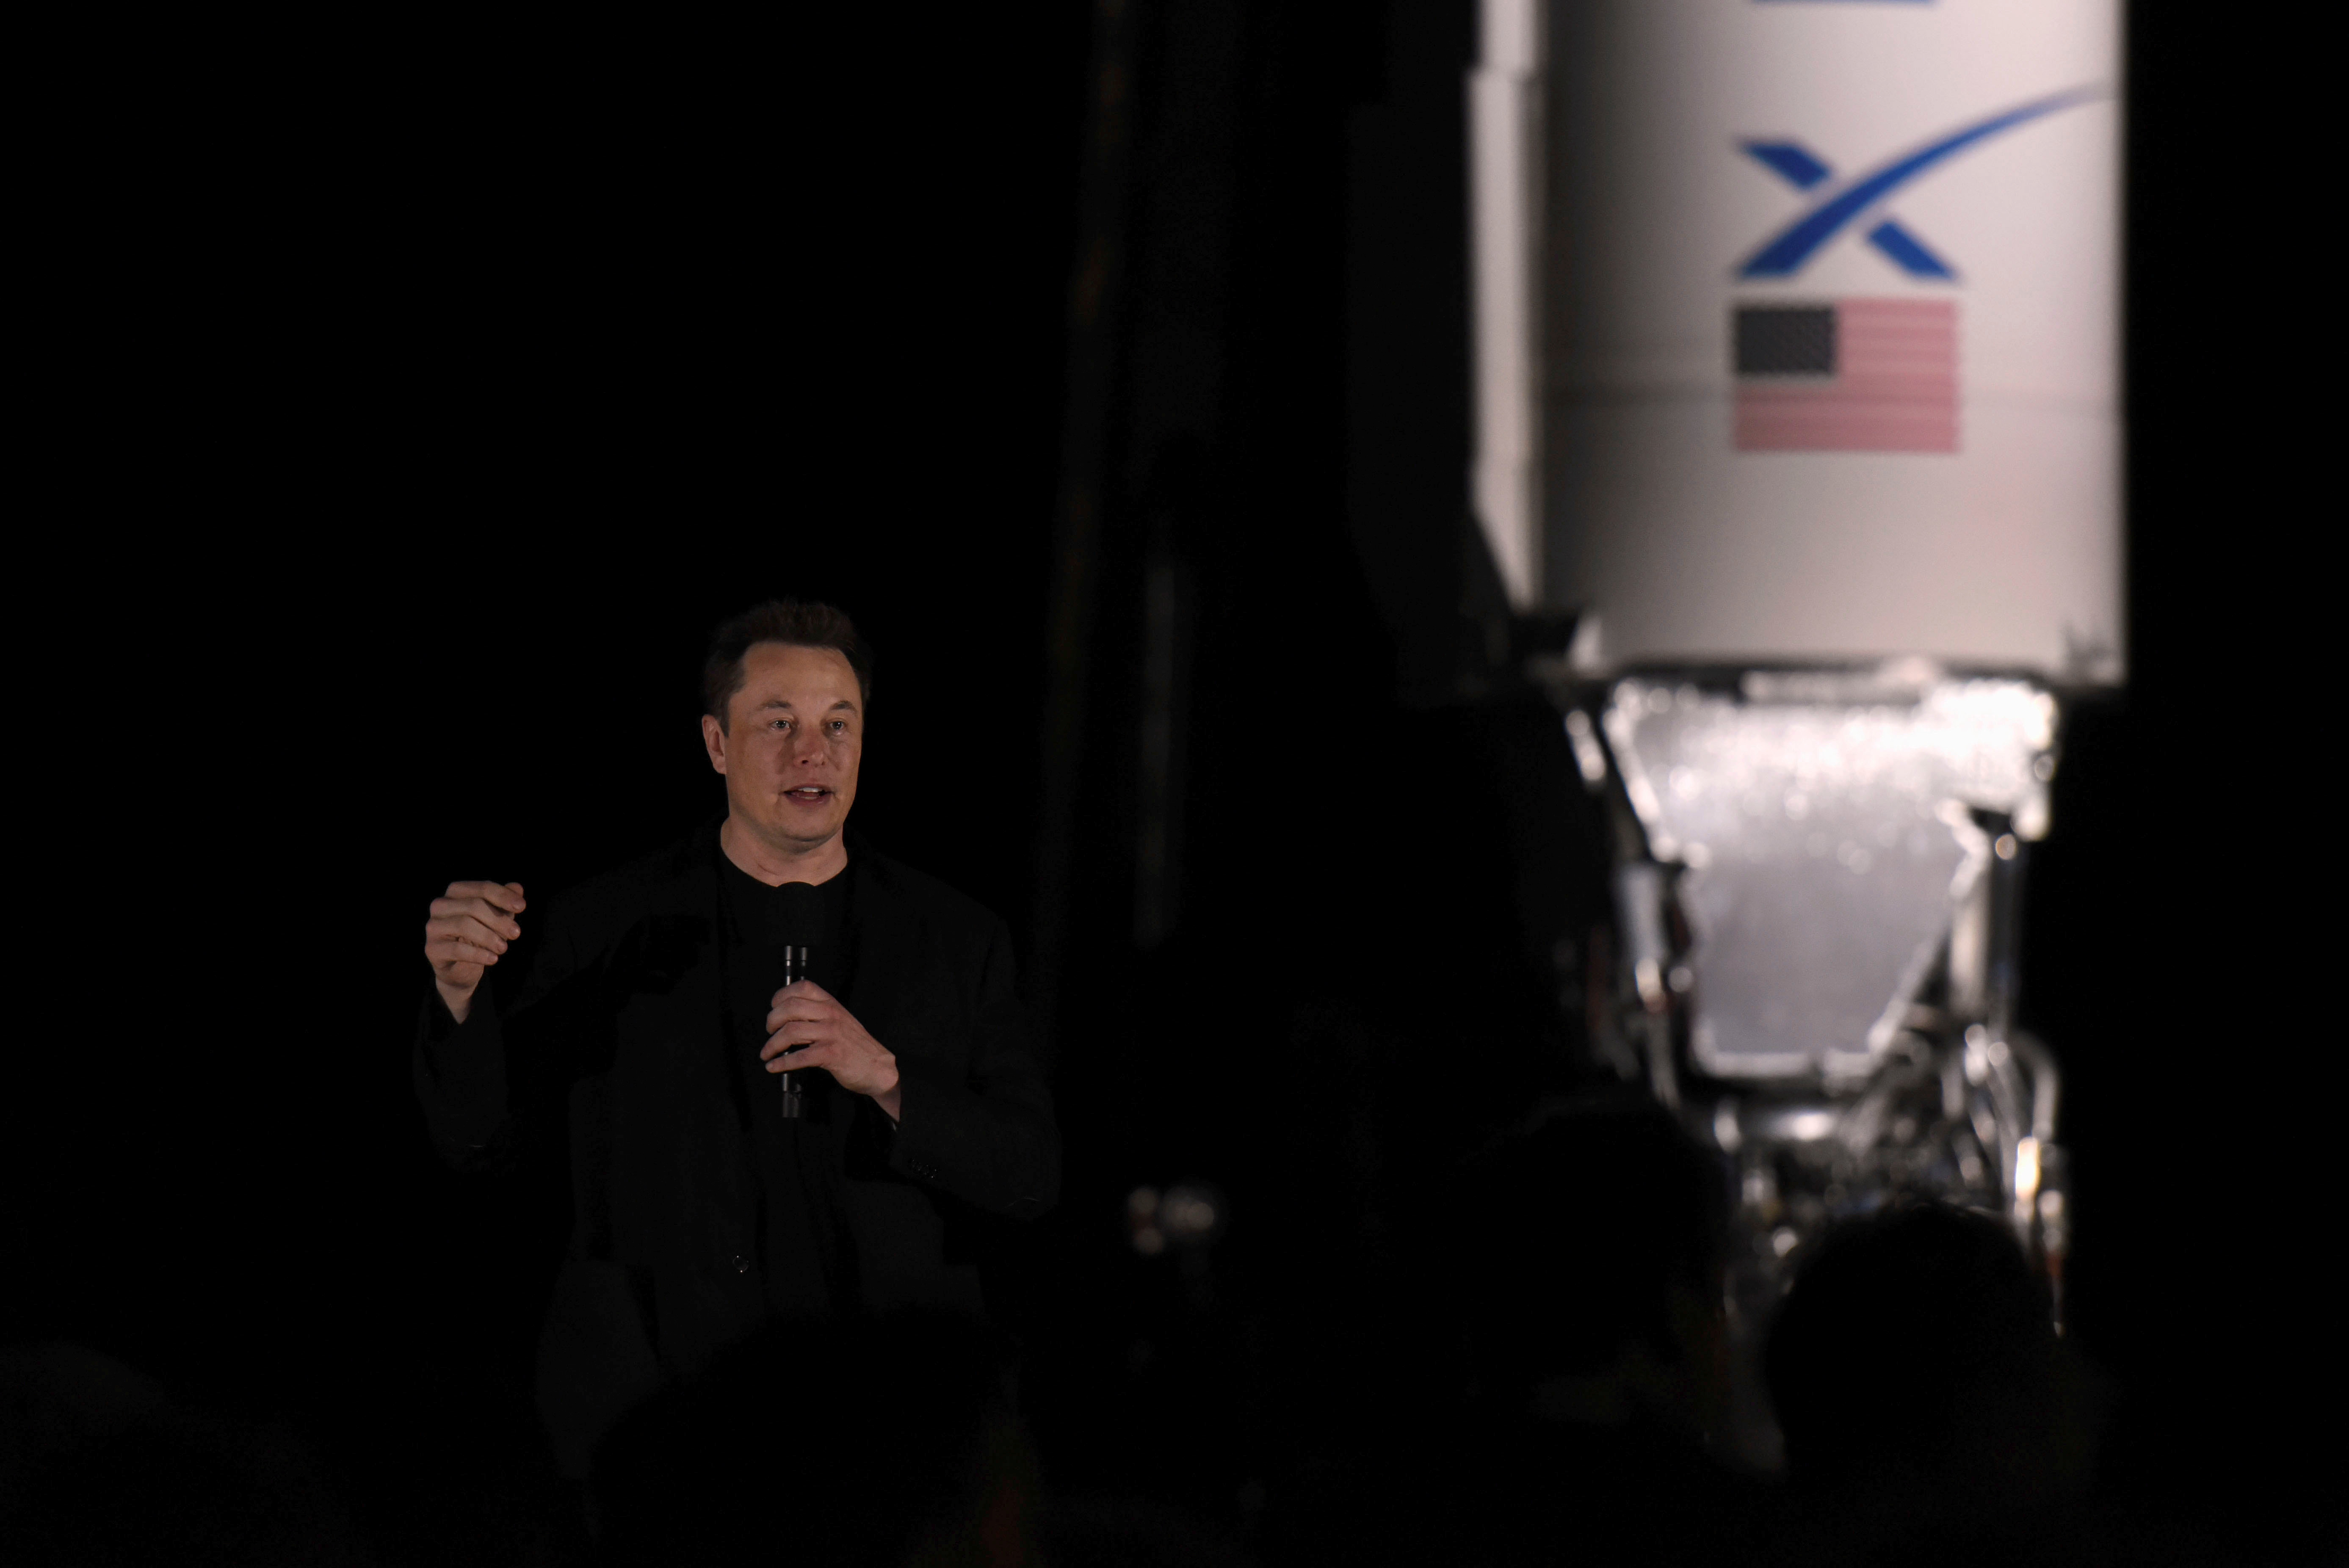 Elon Musk es ceo de SpaceX, la empresa espacial privada que busca llegar a Marte en la próxima década (REUTERS/Callaghan O'Hare/File Photo)